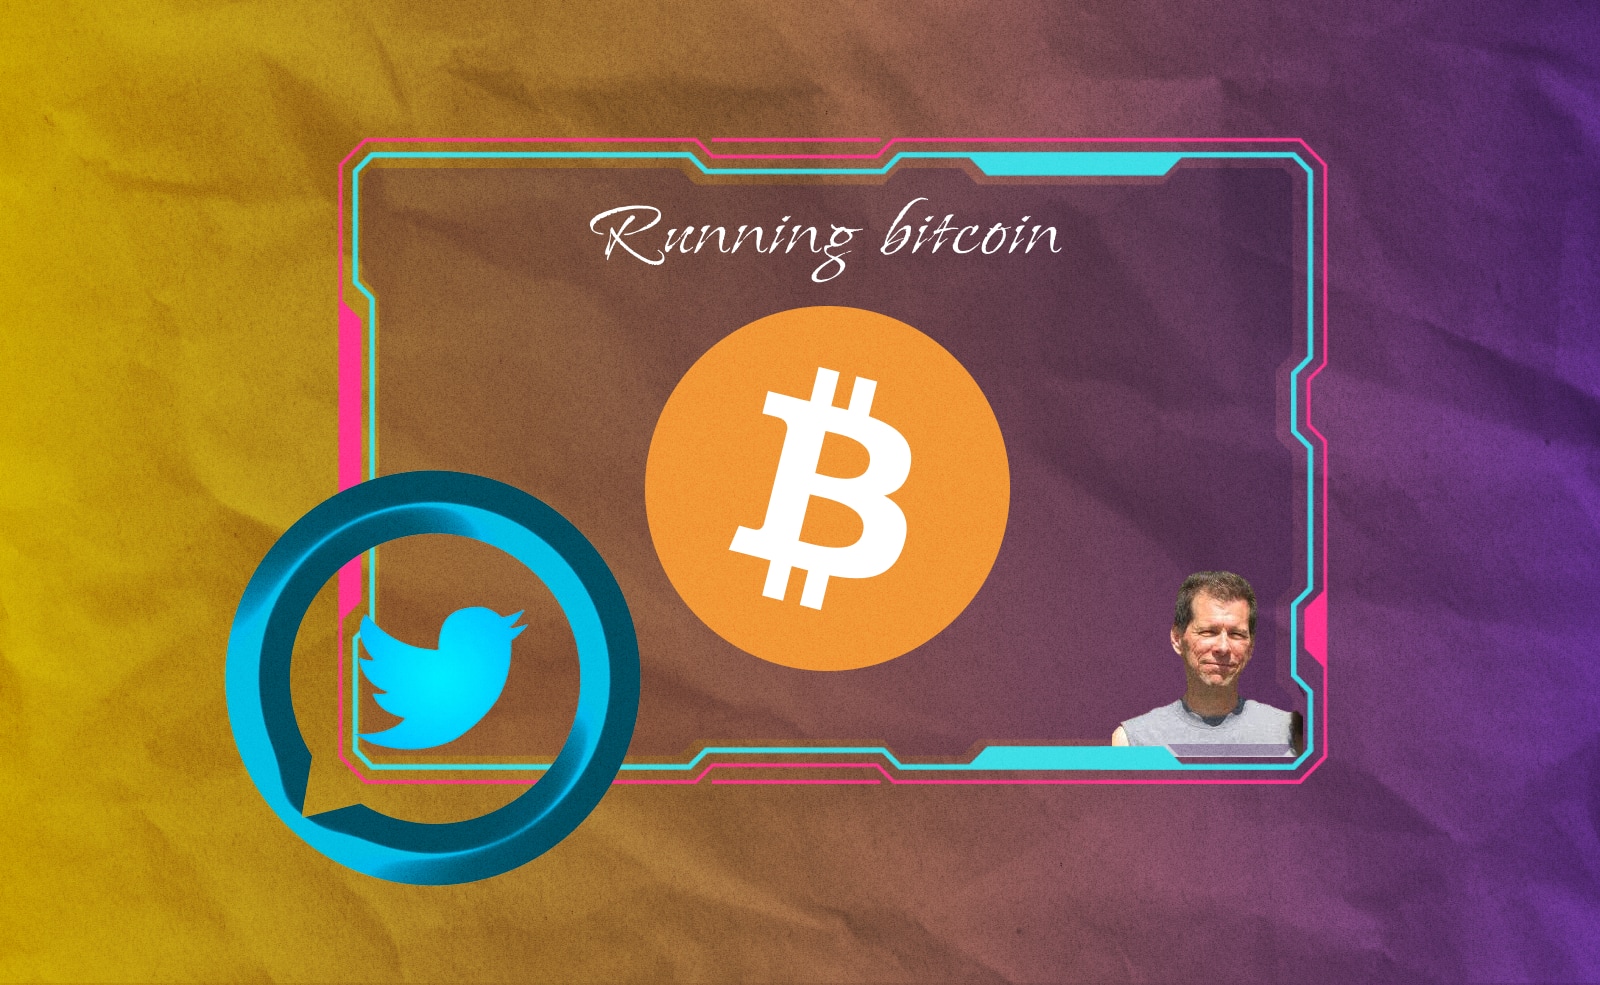 14 лет назад разработчик Хэл Финни написал в своем Twitter фразу «Running bitcoin». Этот твит стал легендарным, так как его автор имеет непосредственное отношение к становлению Bitcoin.